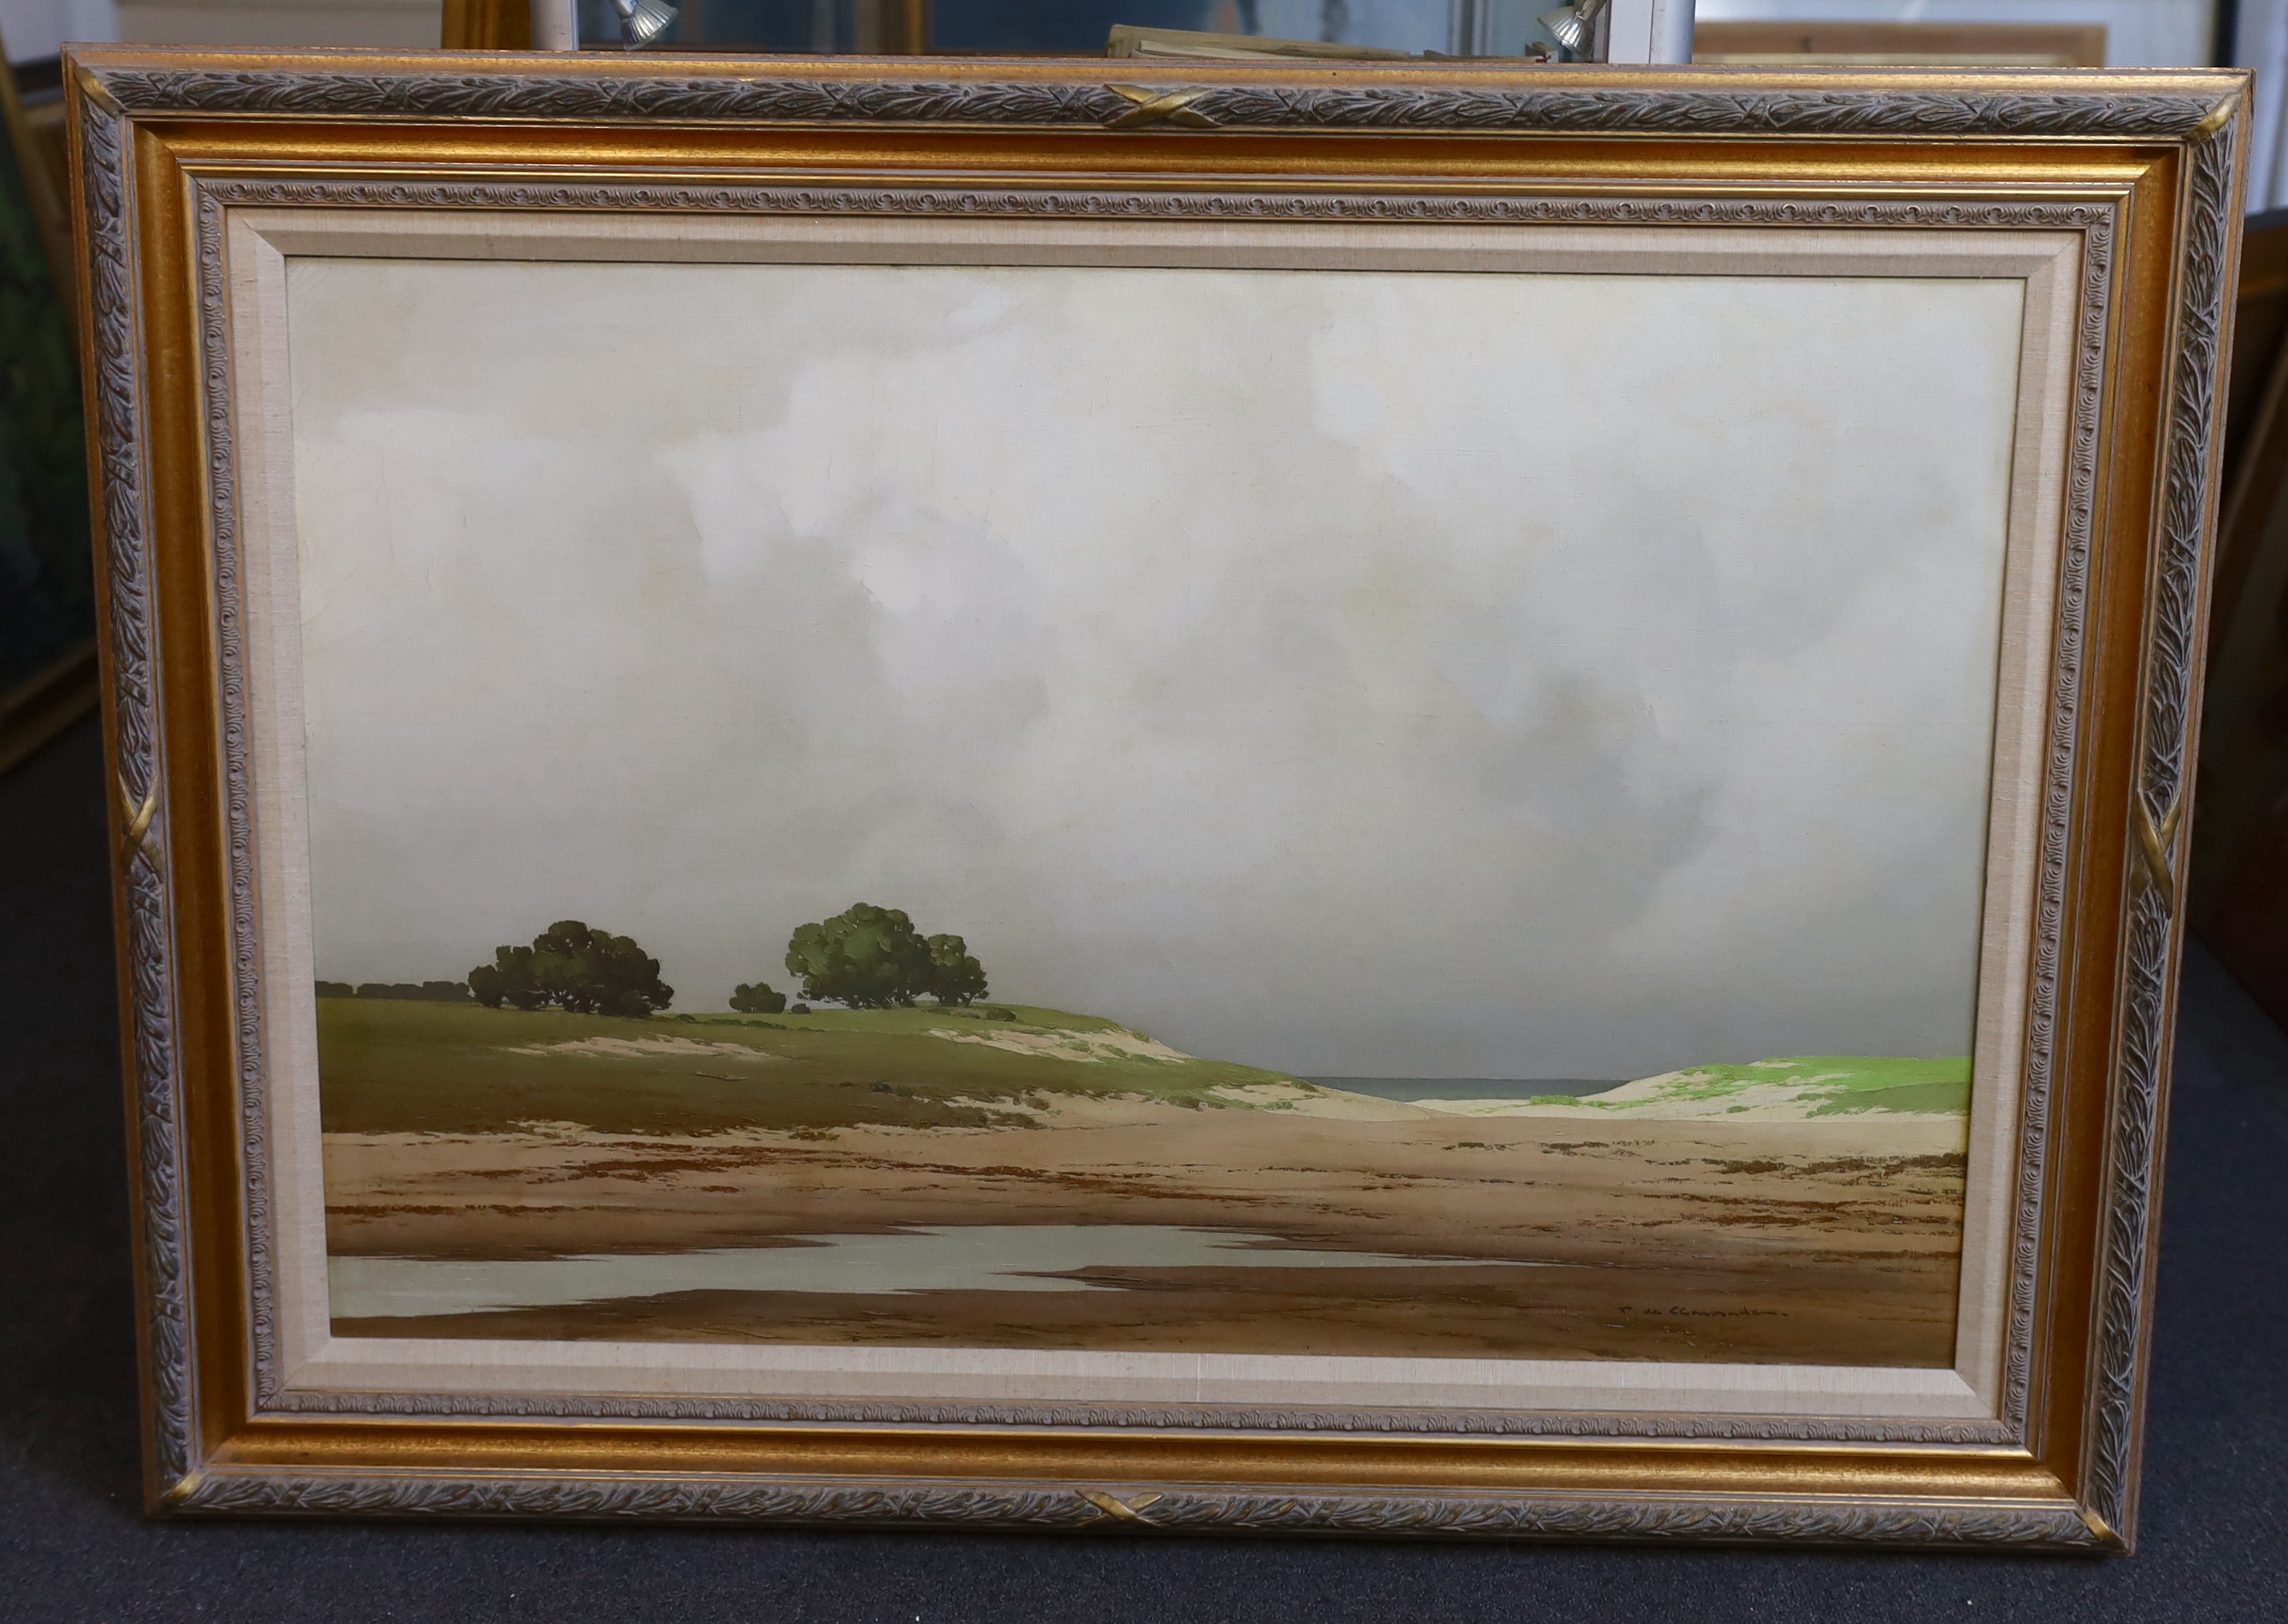 Pierre de Clausades (French, 1910–1976), Coastal landscape, oil on canvas, 60 x 90cm